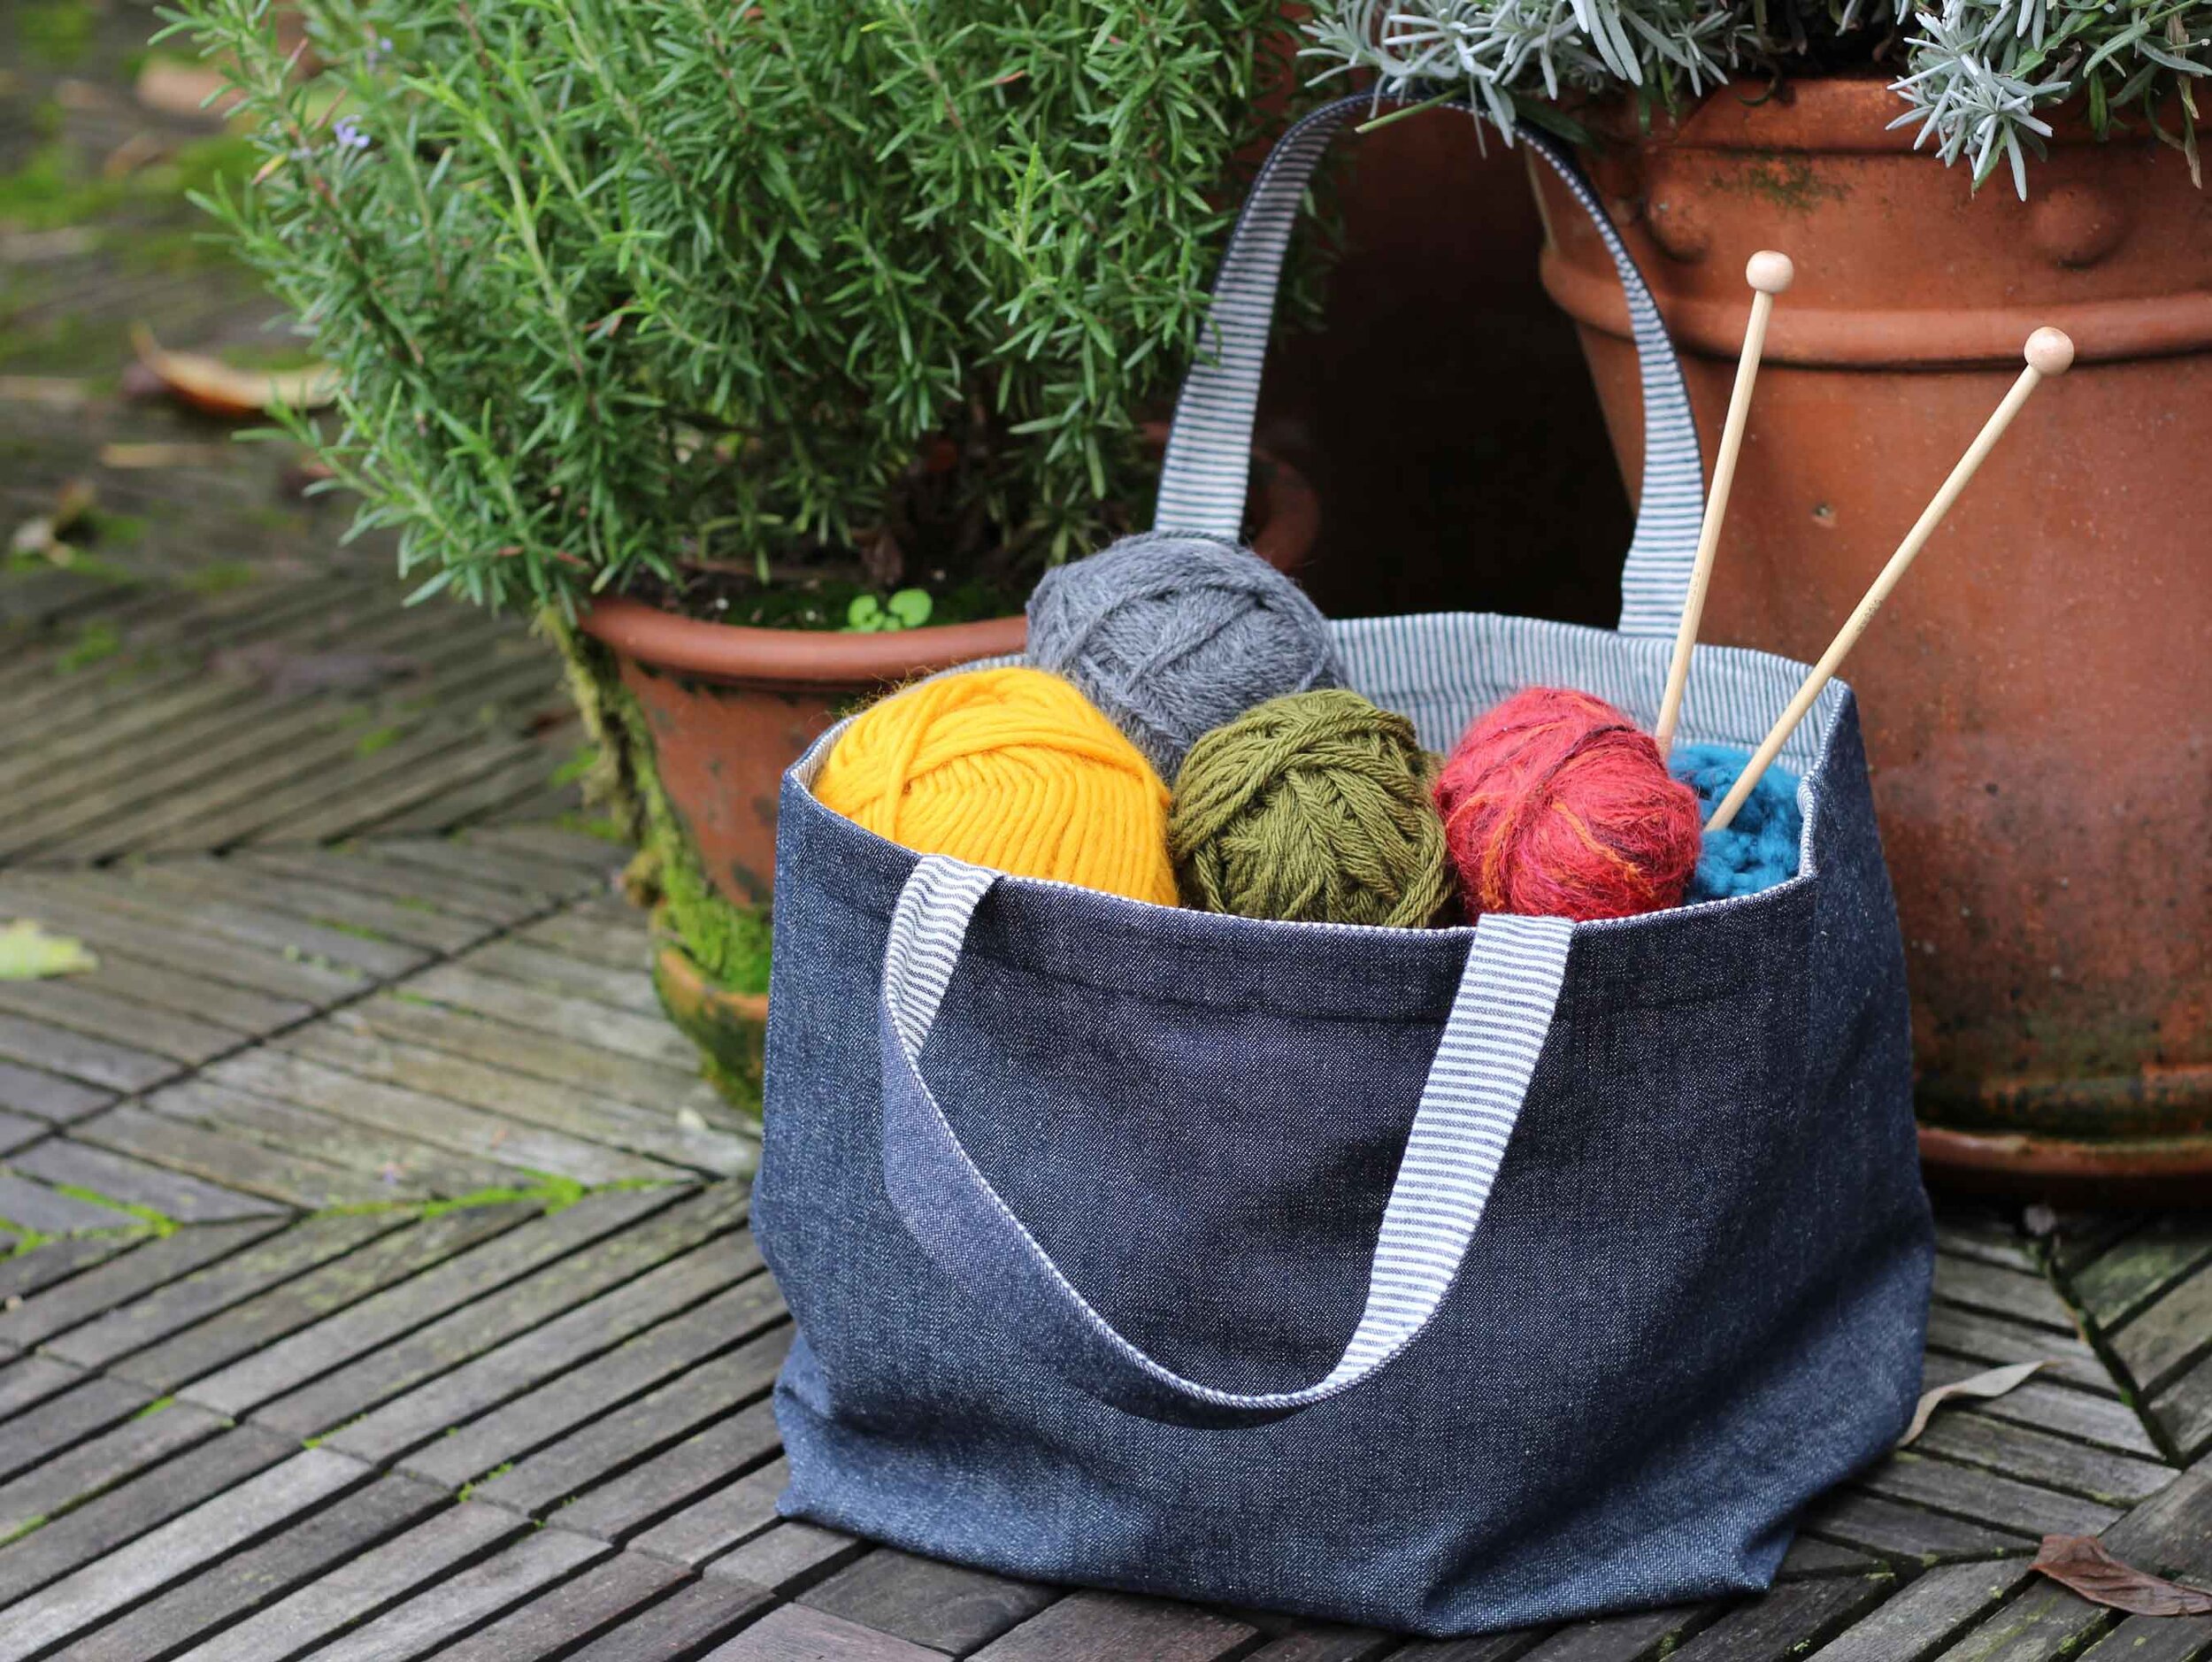 How to make Reversible Bag, DIY Eco Bag, Market Tote, Simple tote bag, 양면가방 만들기